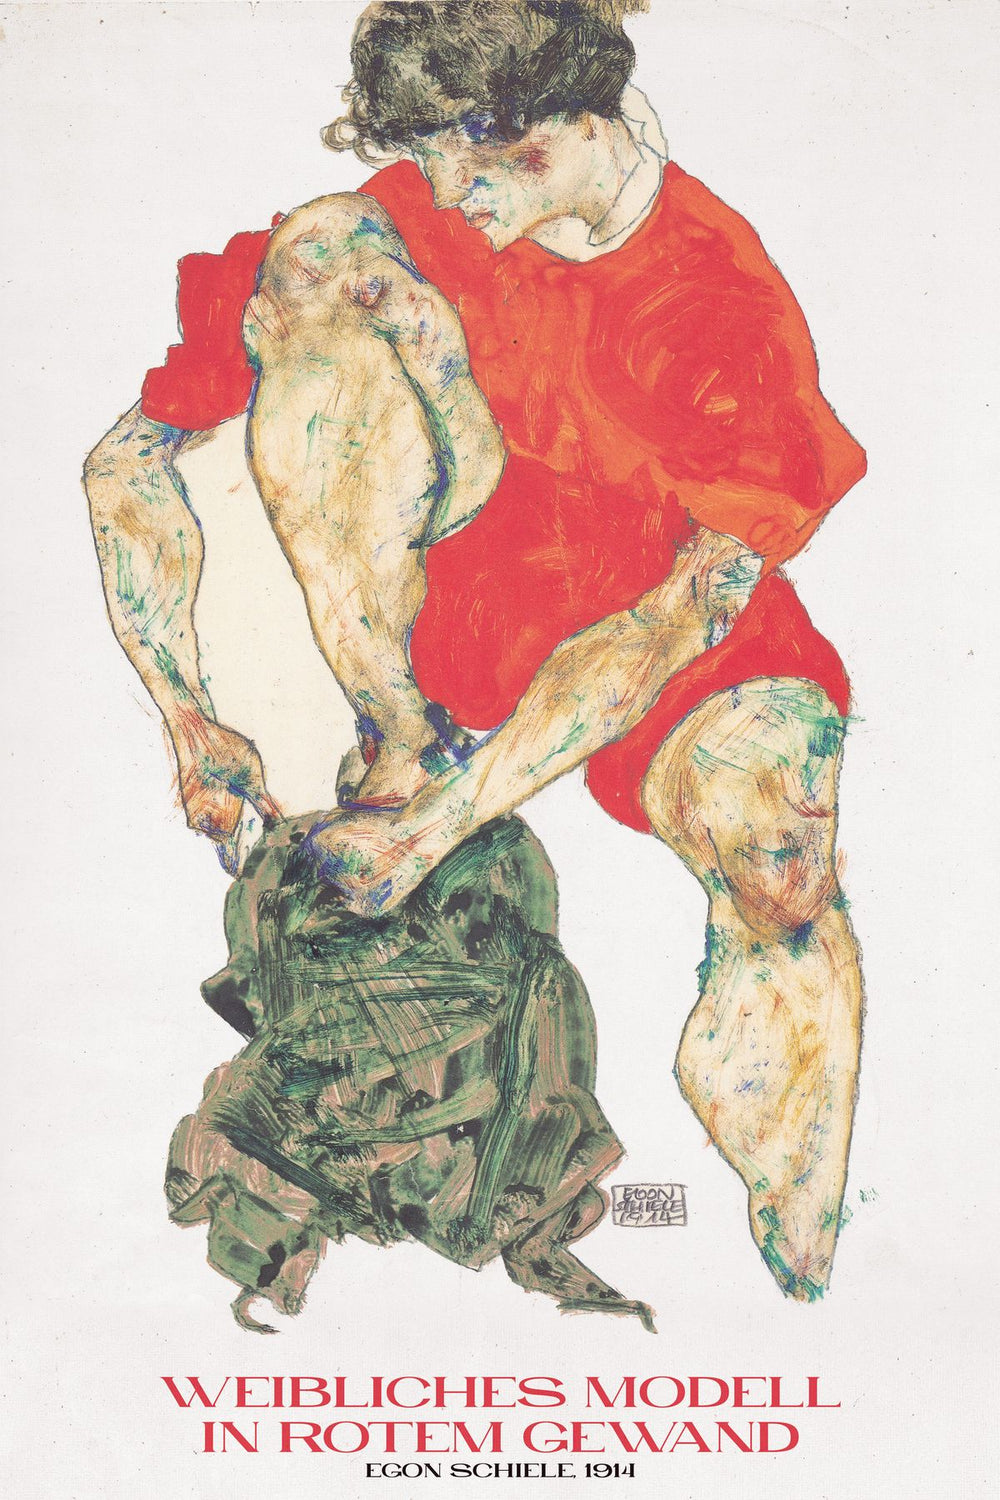 Weibliches Modell Schiele Exhibition Poster